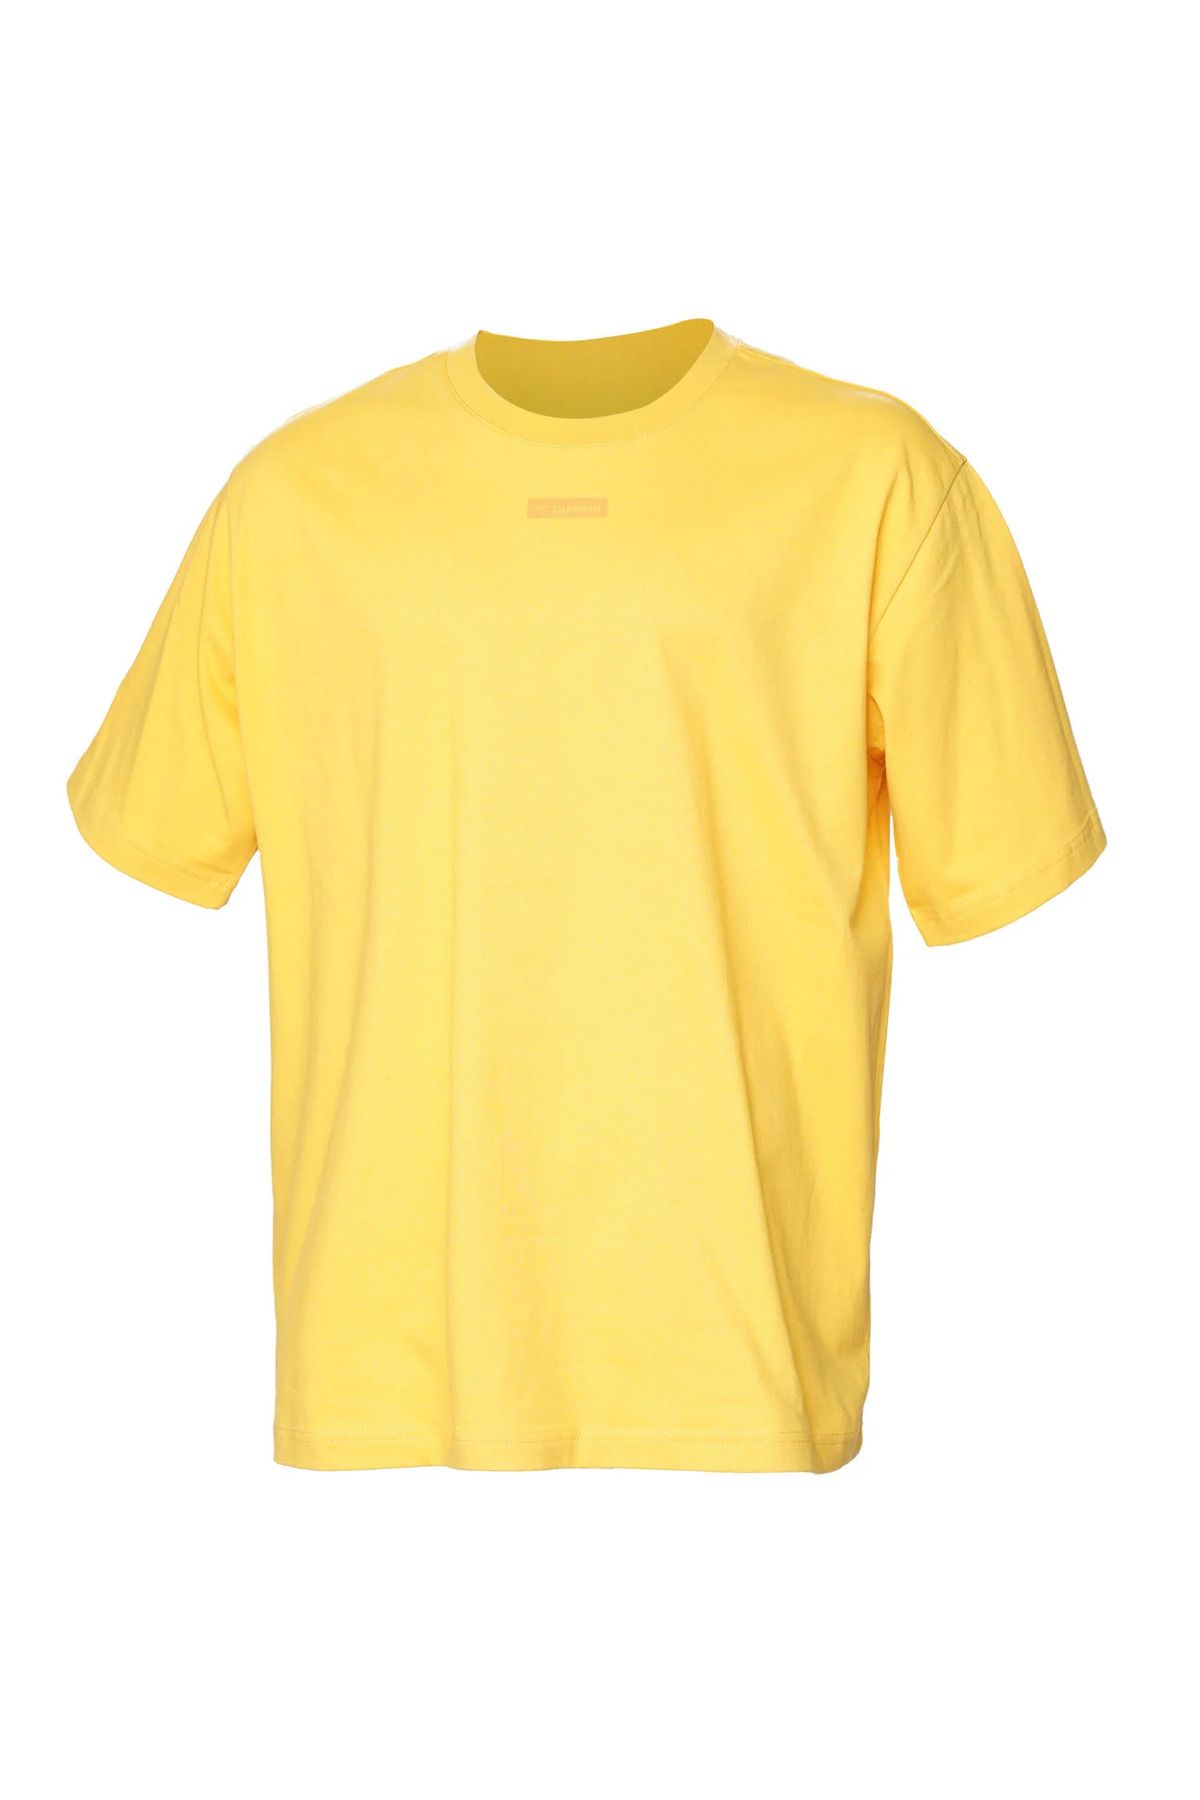 hummel Hmljavon Oversıze T-shırt S/s Erkek T-shirt 911806-2523 Golden Spıce